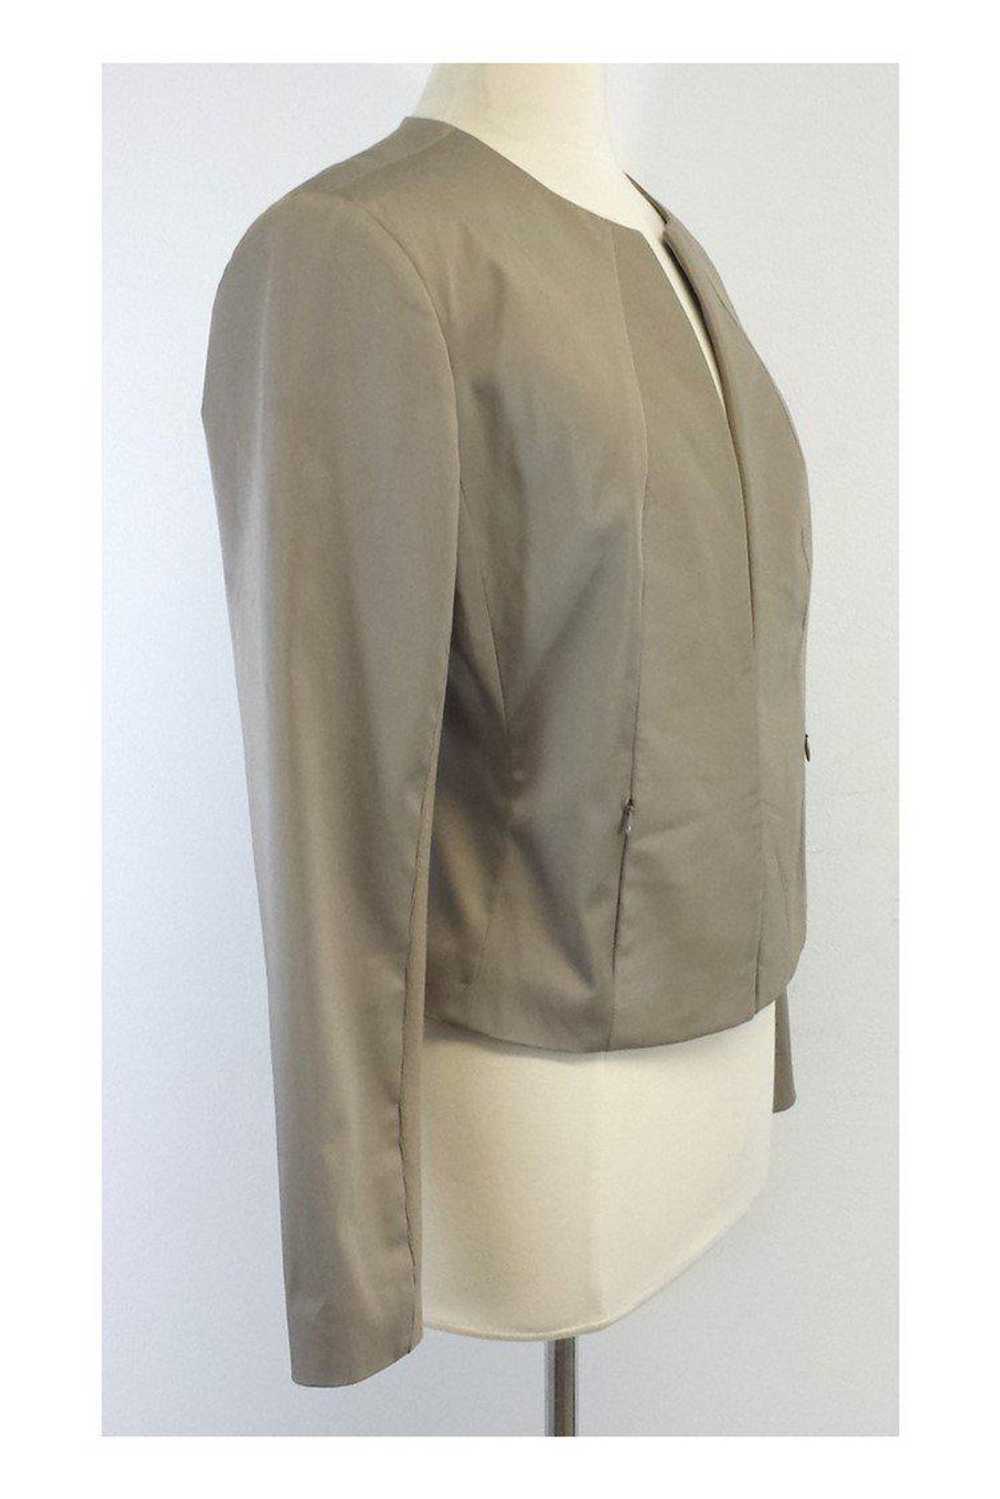 Iris Setlakwe - Beige Cotton & Leather Jacket Sz … - image 2